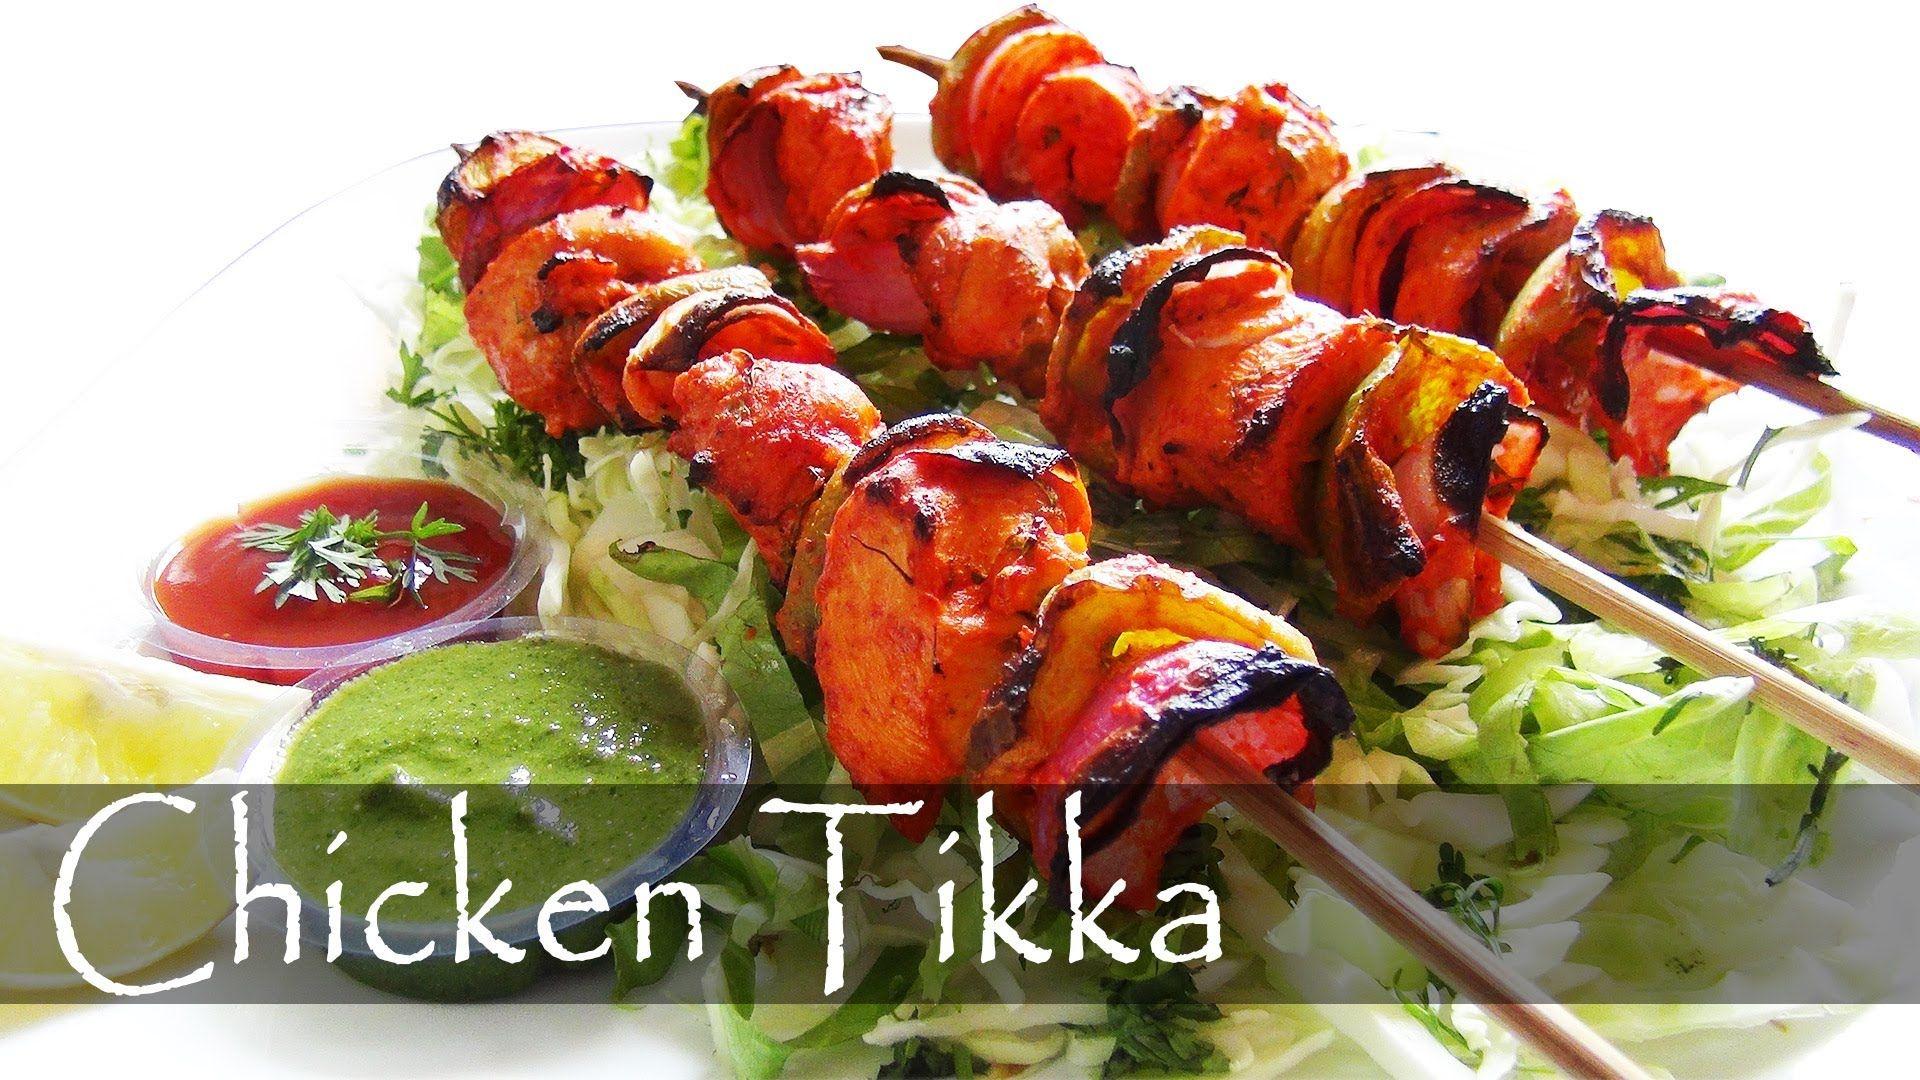 Tikka Images - Free Download on Freepik